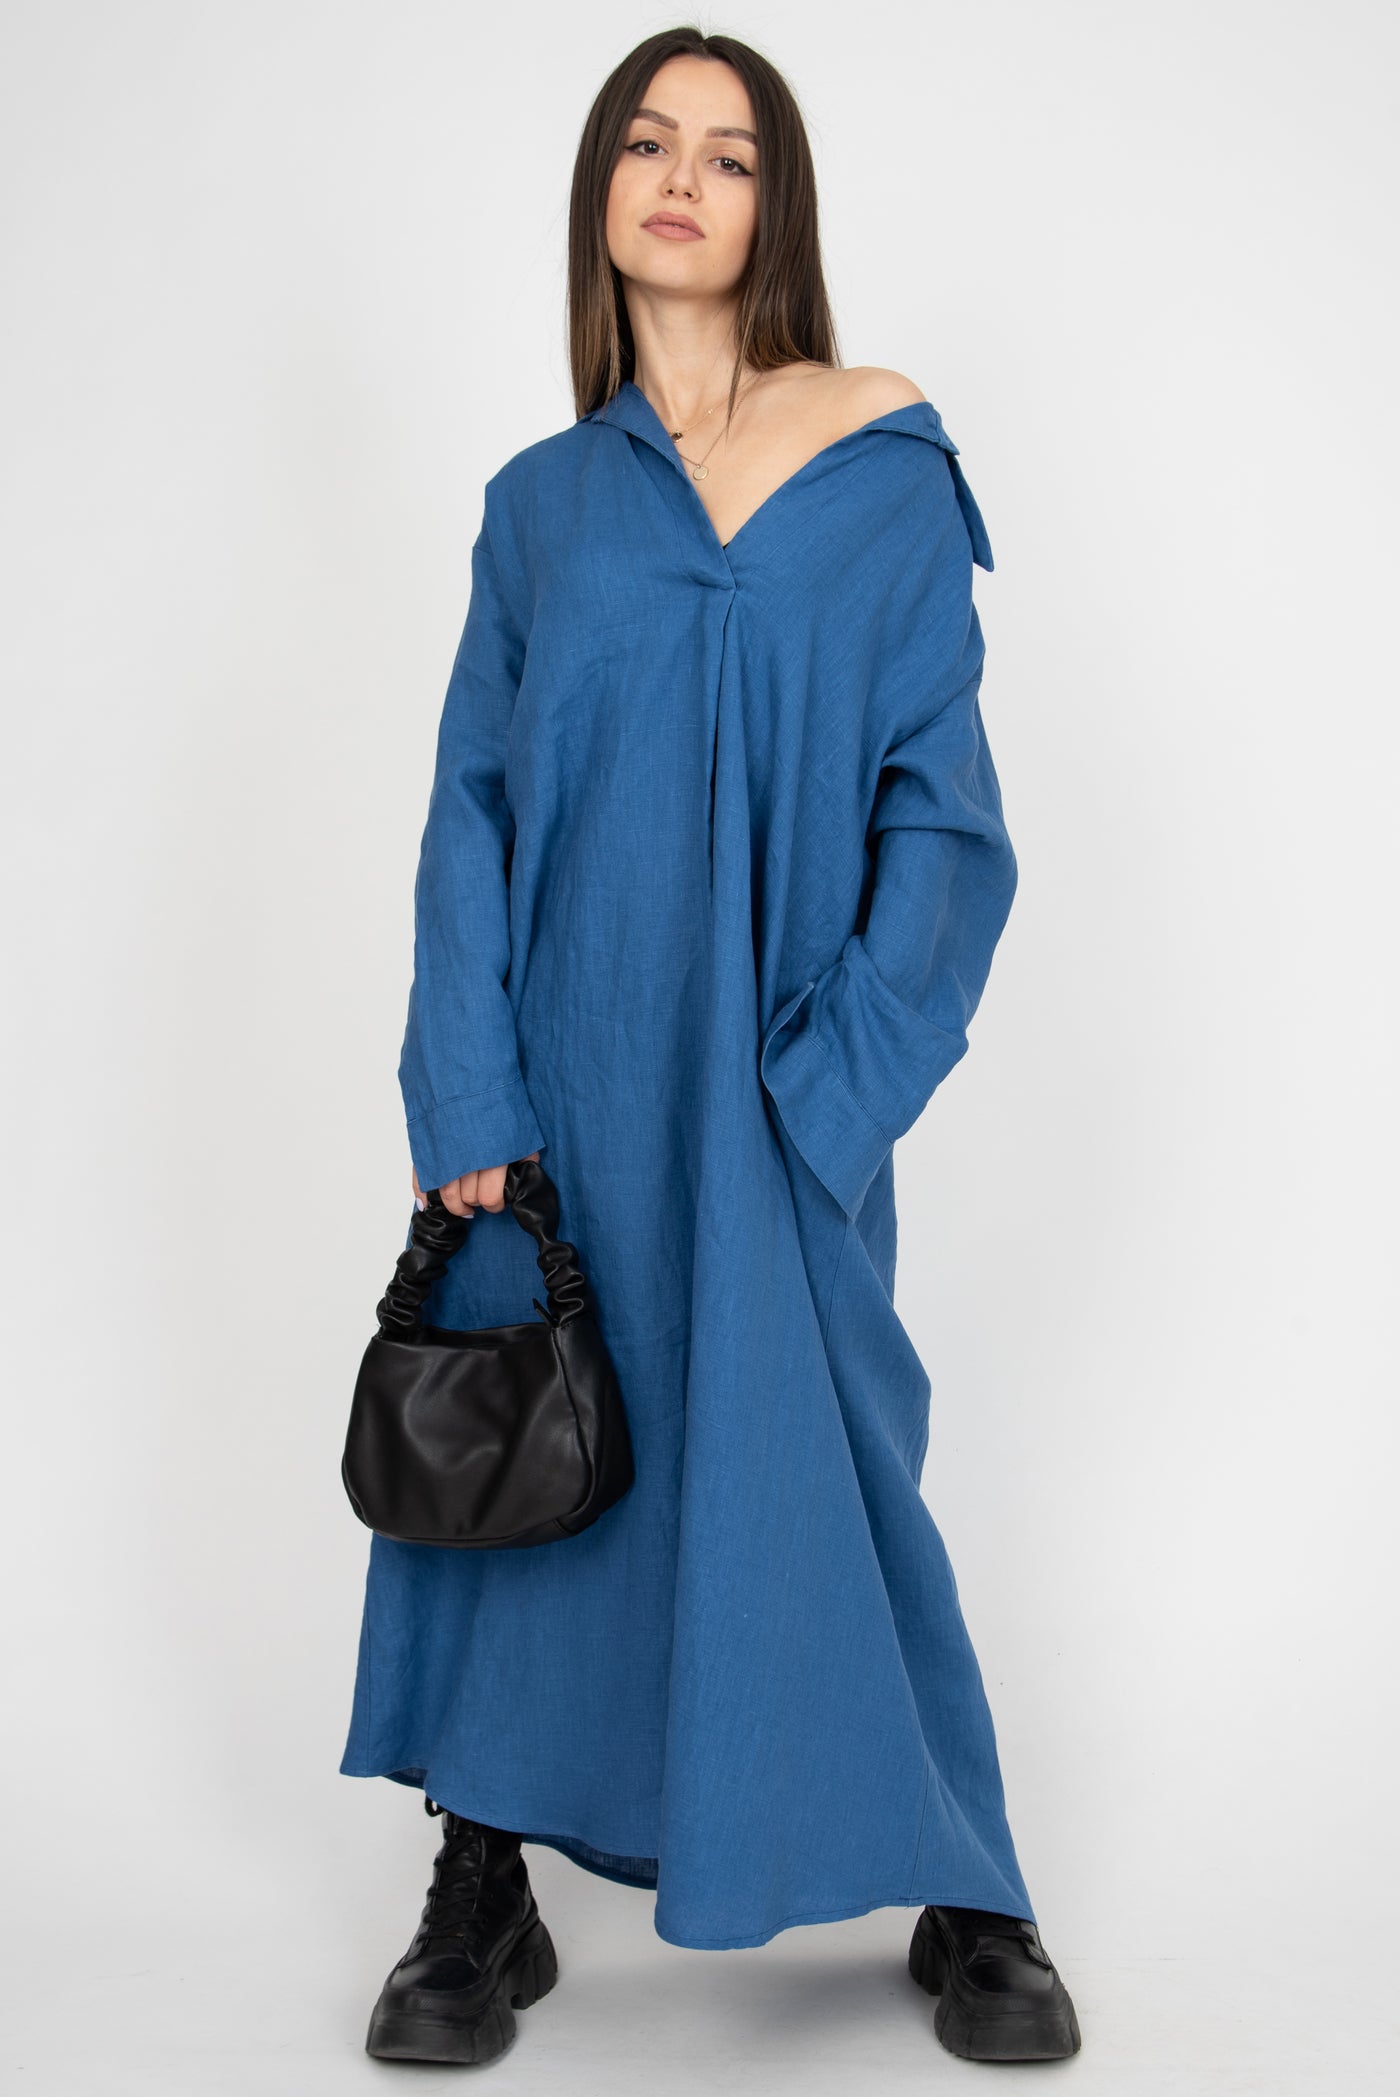 Oversized blue linen shirt dress